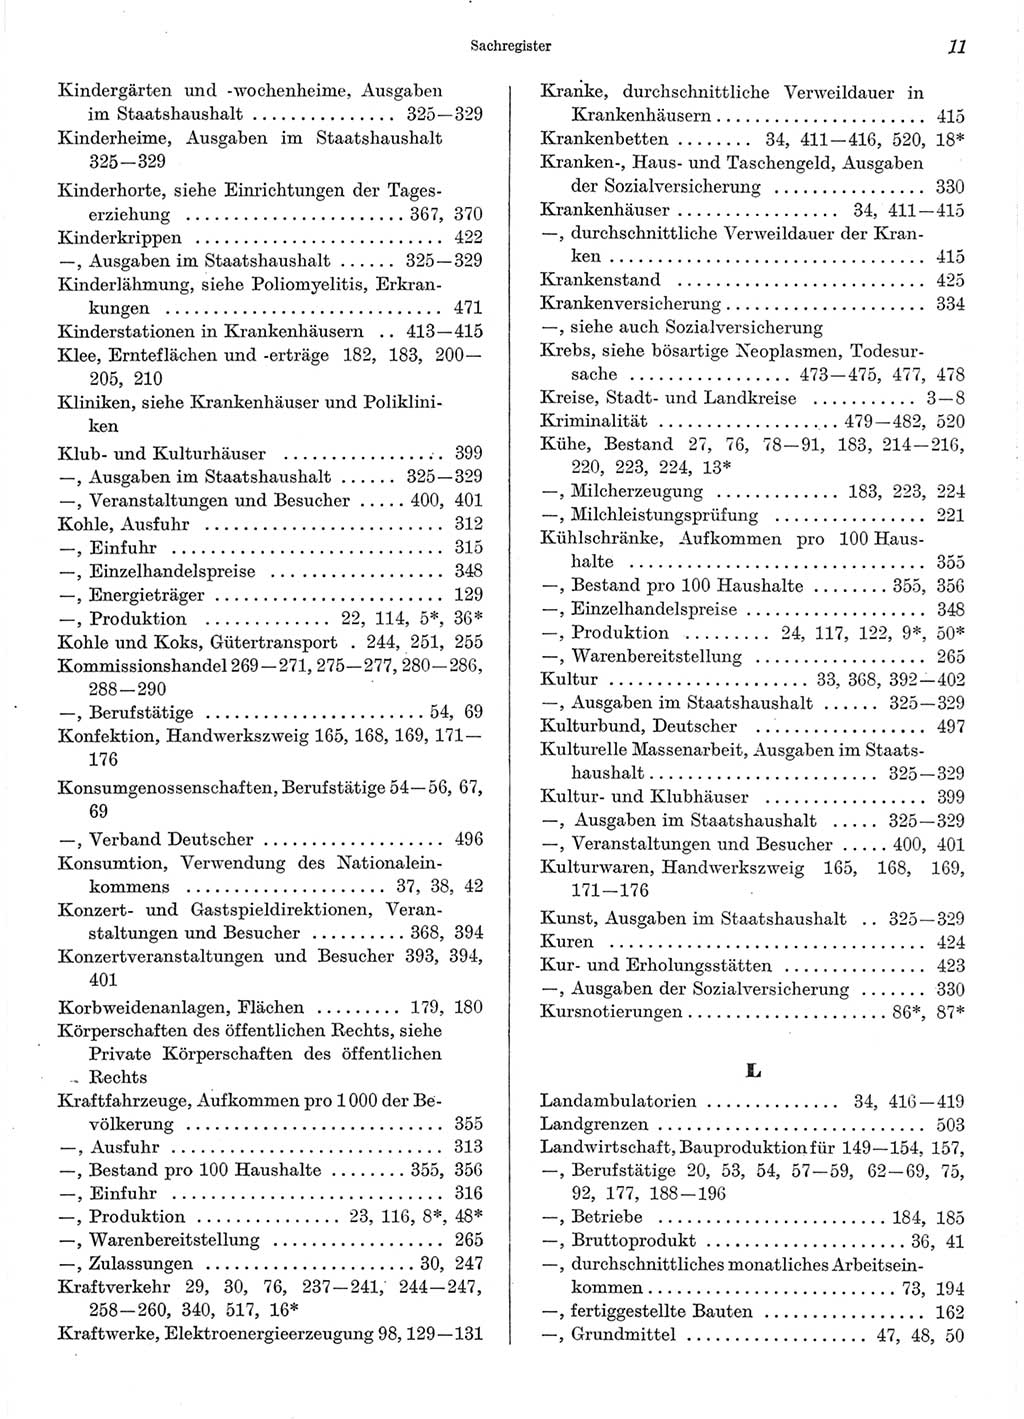 Statistisches Jahrbuch der Deutschen Demokratischen Republik (DDR) 1970, Seite 11 (Stat. Jb. DDR 1970, S. 11)